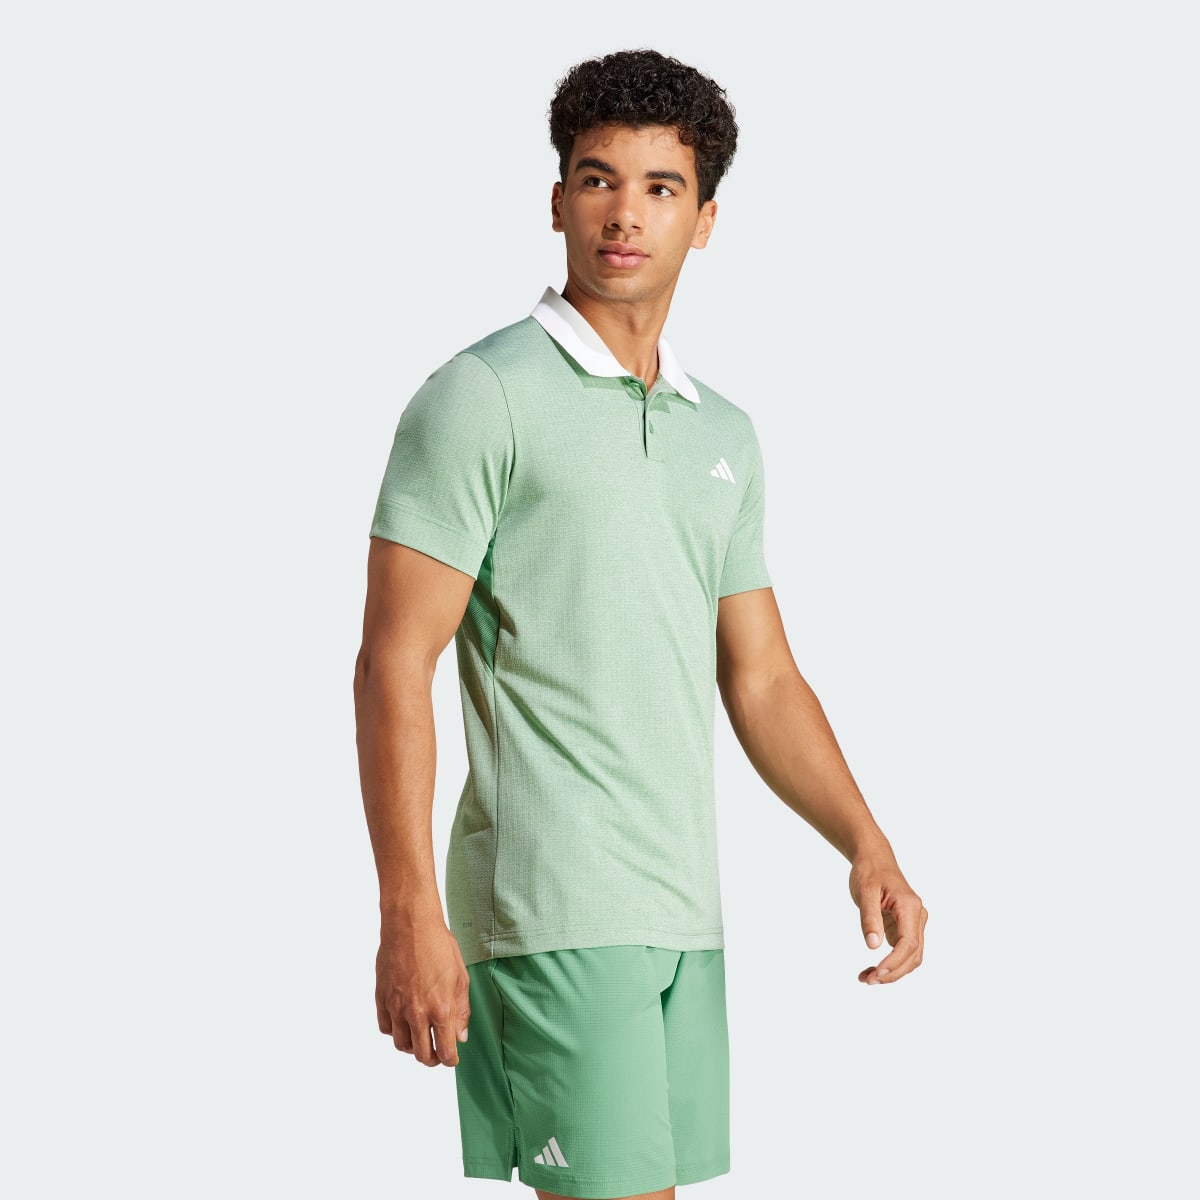 Adidas Tennis FreeLift Poloshirt. 4